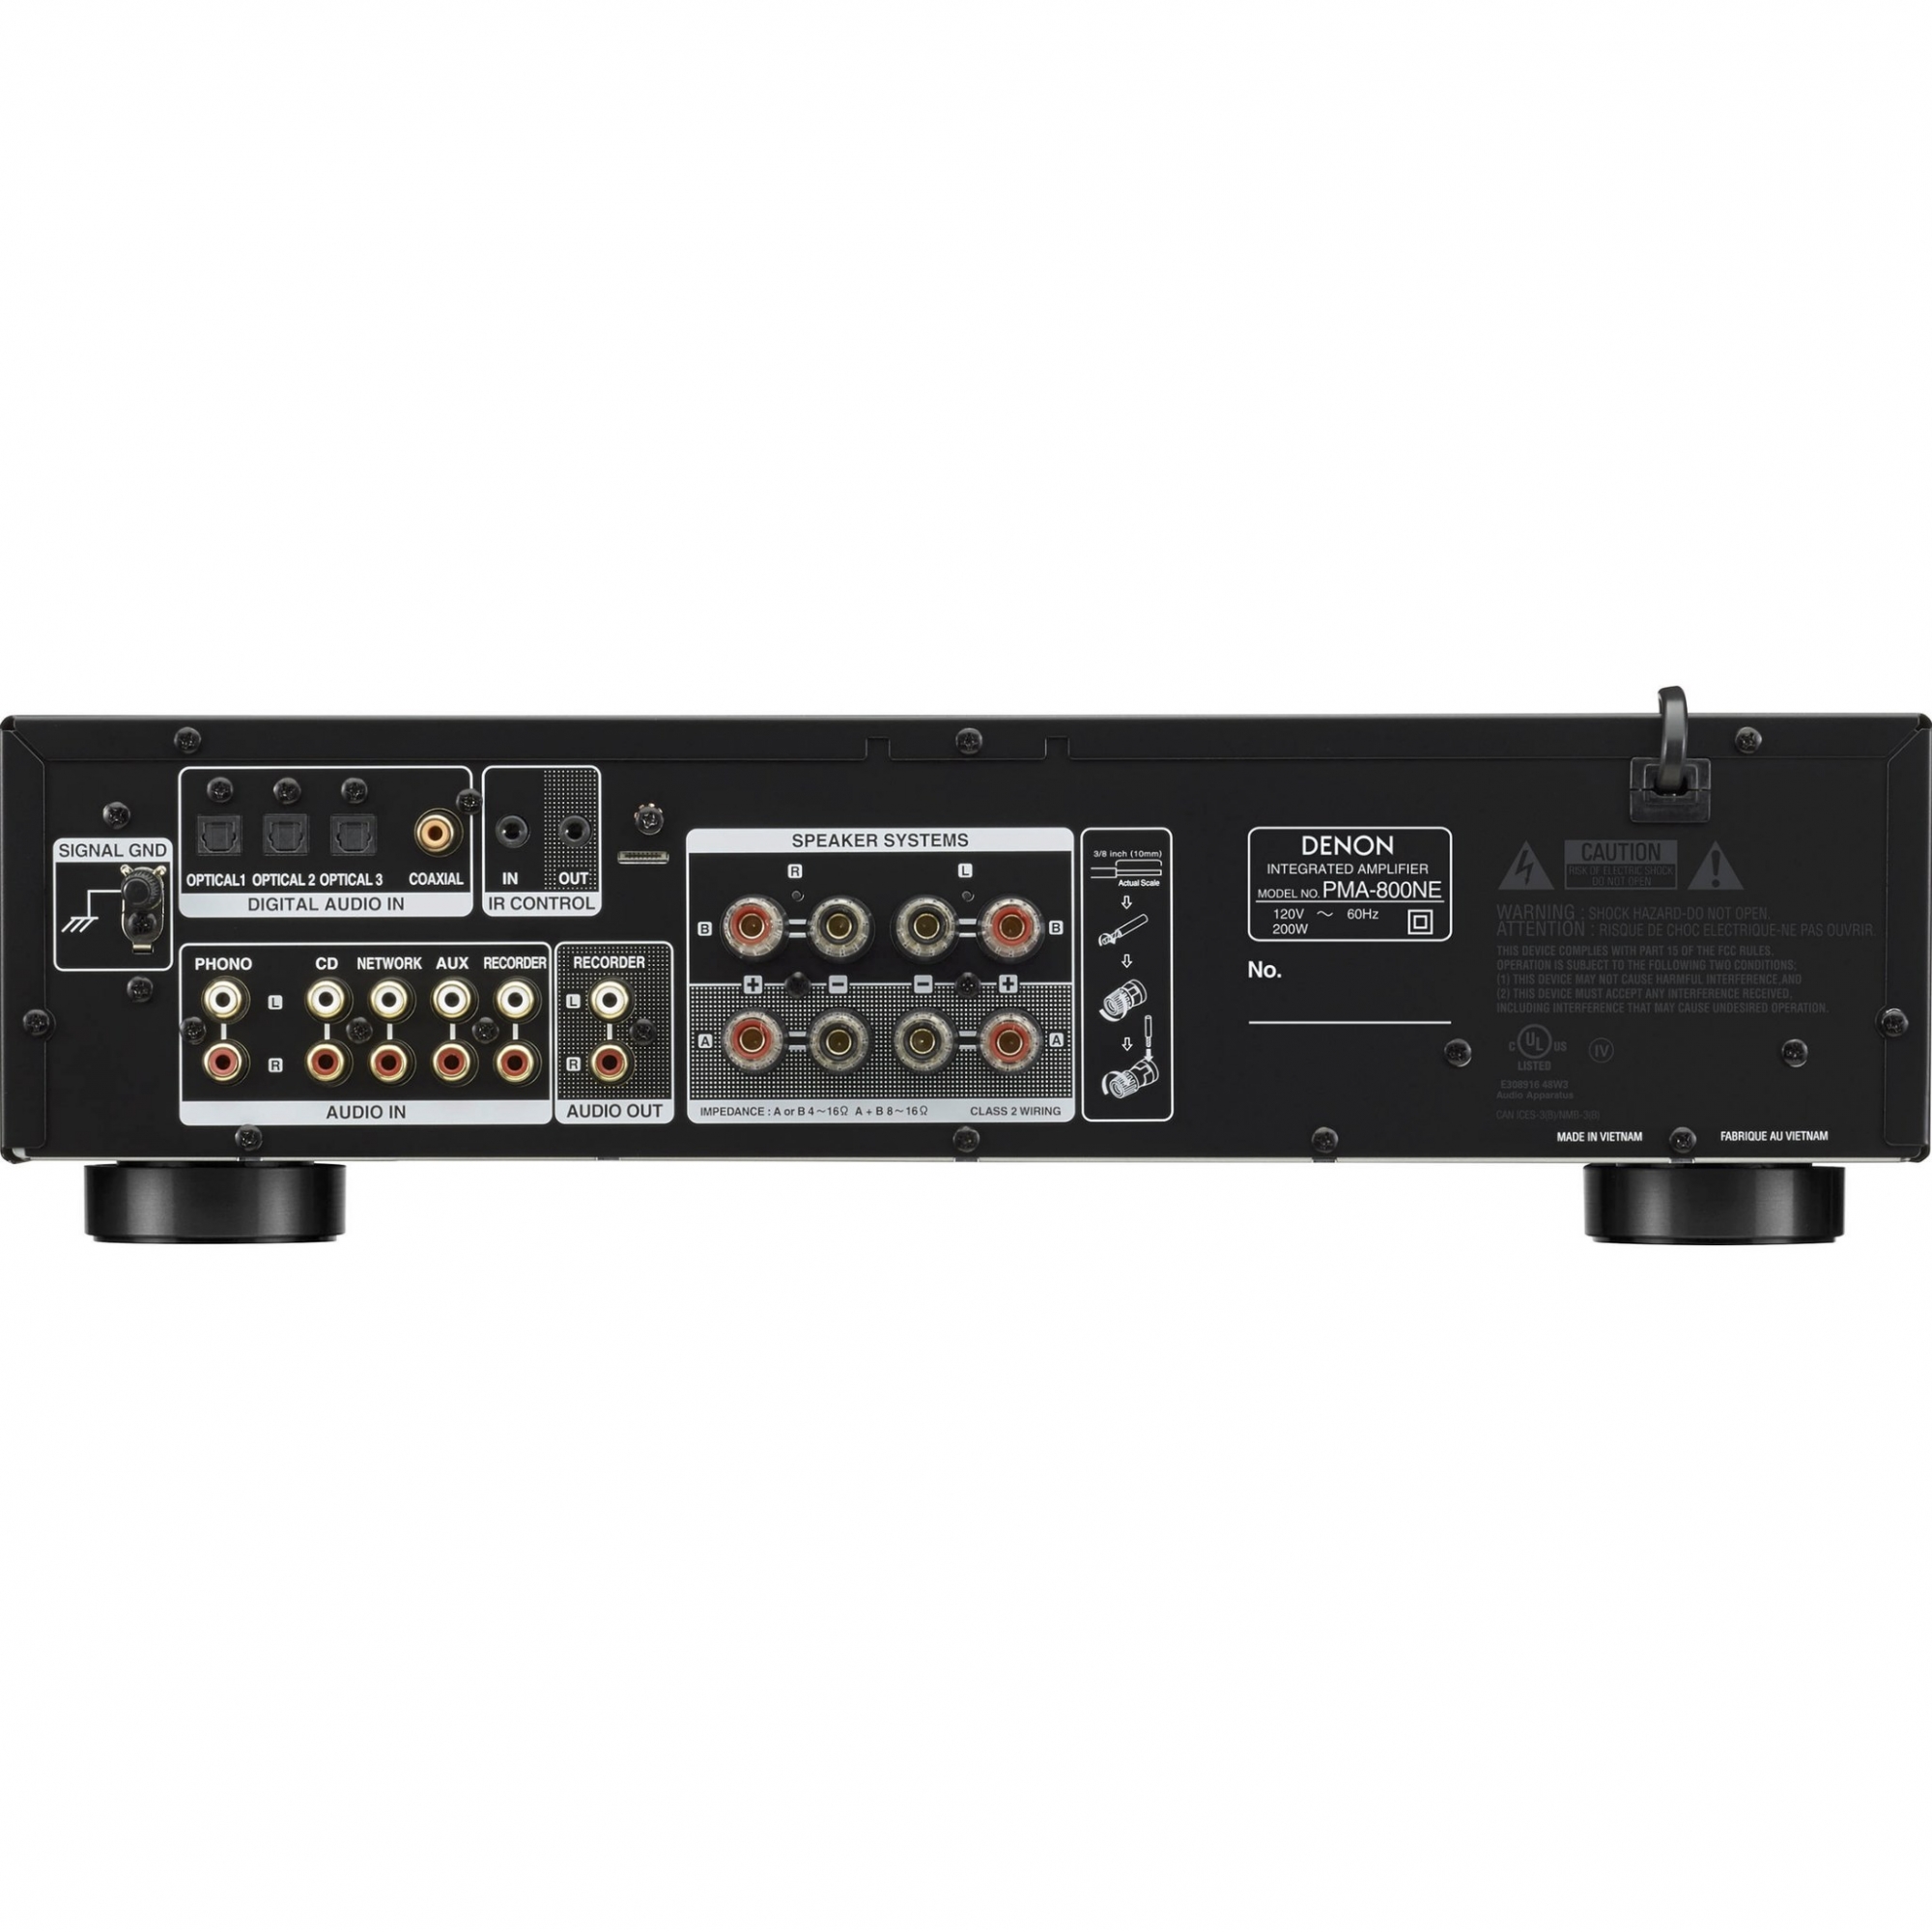 Amplificador Integrado D e n o n - Pma-800ne - 120v